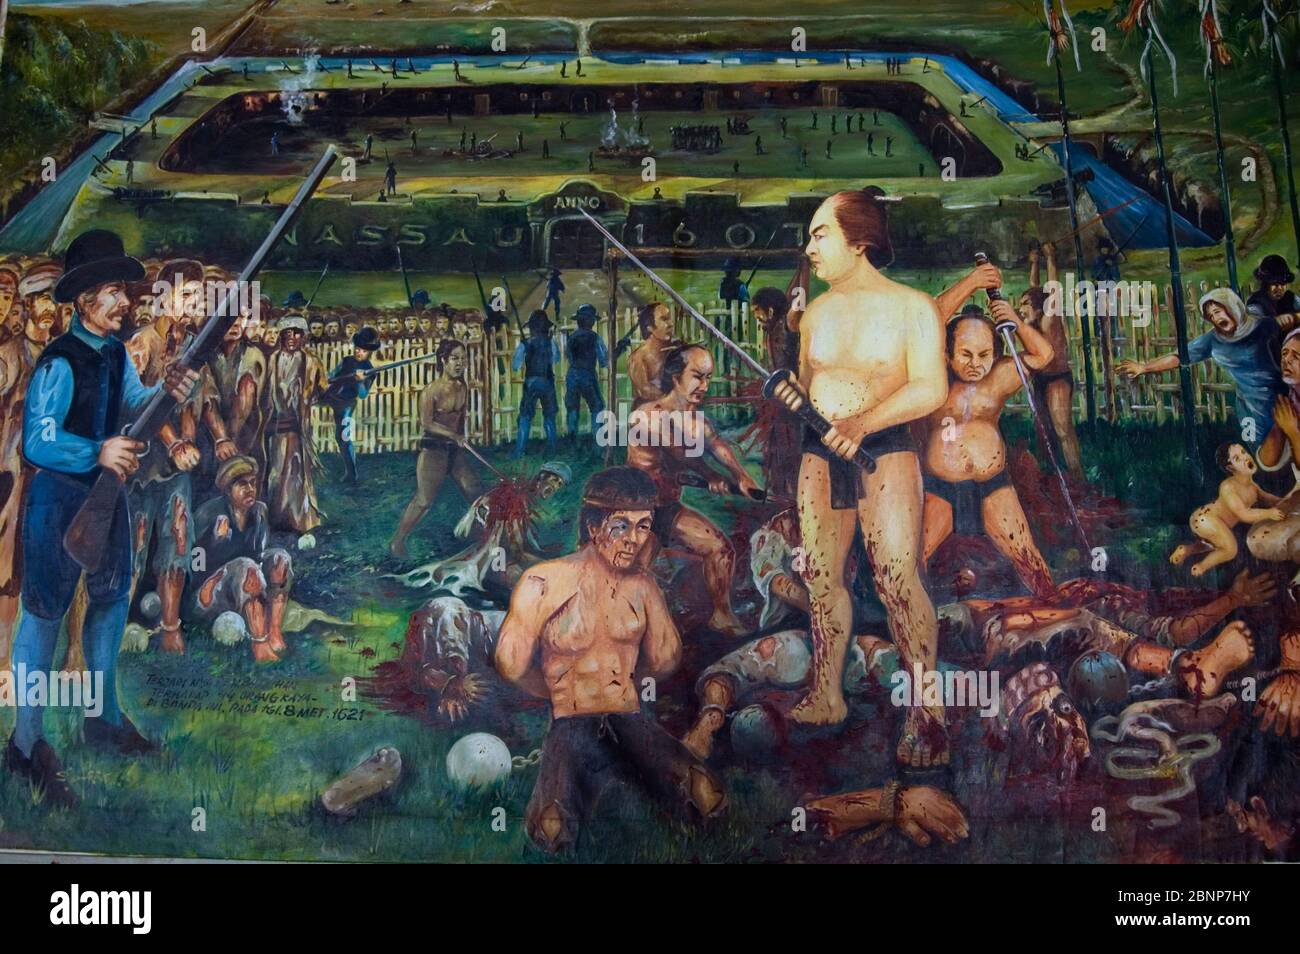 Horrible peinture du massacre de Banda où les premiers colons hollandais ont massacré des habitants en 1621, Musée, Banda Neira, Banda Sea, Moluques,Indonésie Banque D'Images